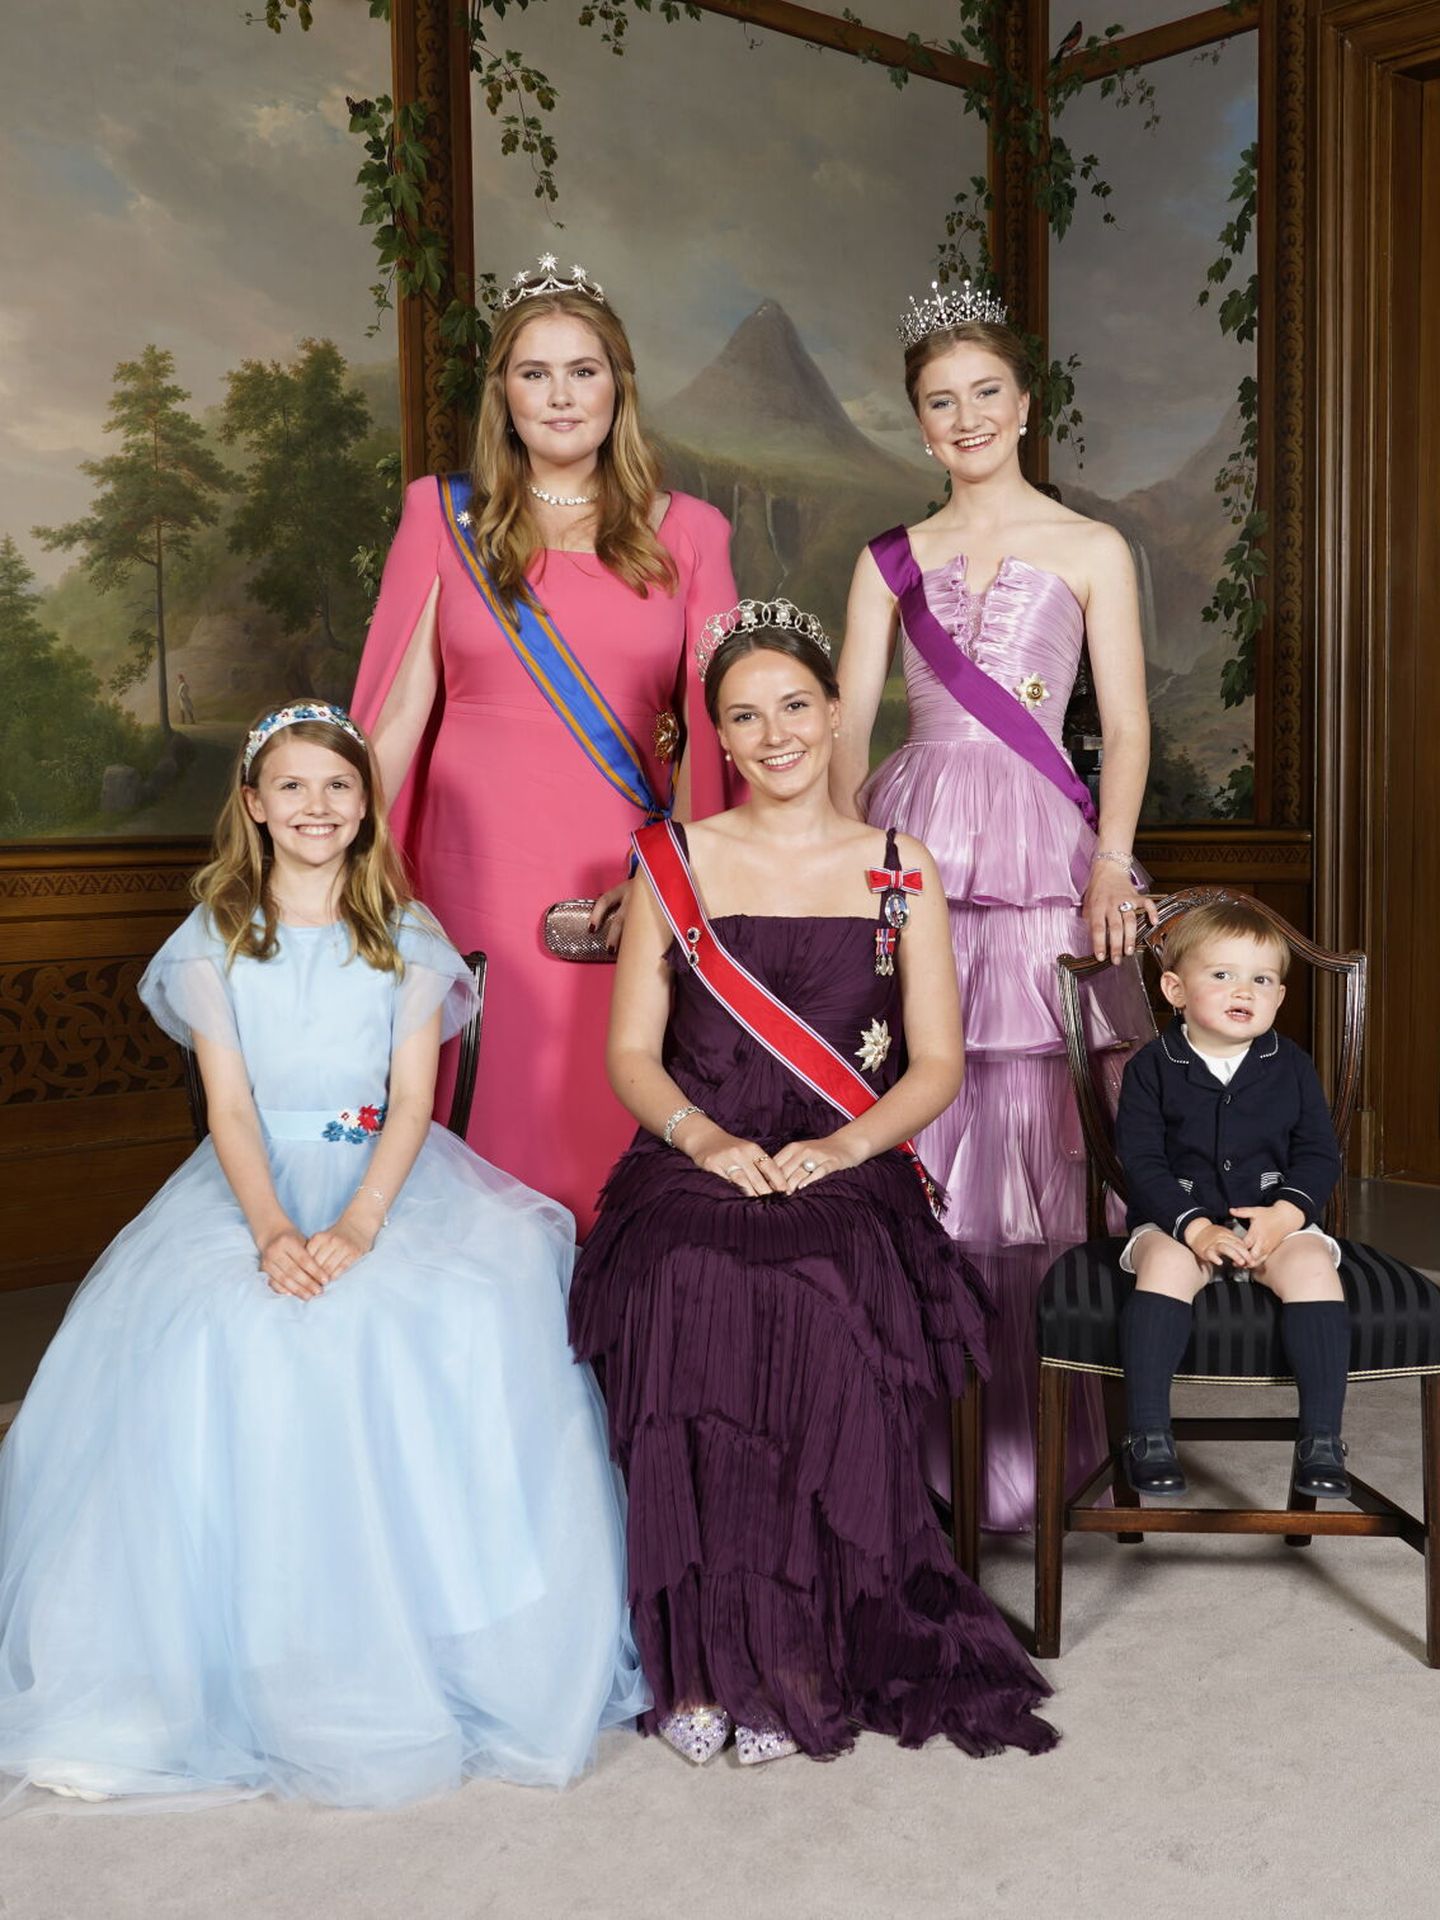 Amalia de Holanda, Elisabeth de Bélgica, Estelle de Suecia, Ingrid de Noruega y Charles de Luxemburgo. (Reuters/Casa Real/Lise Aserud)